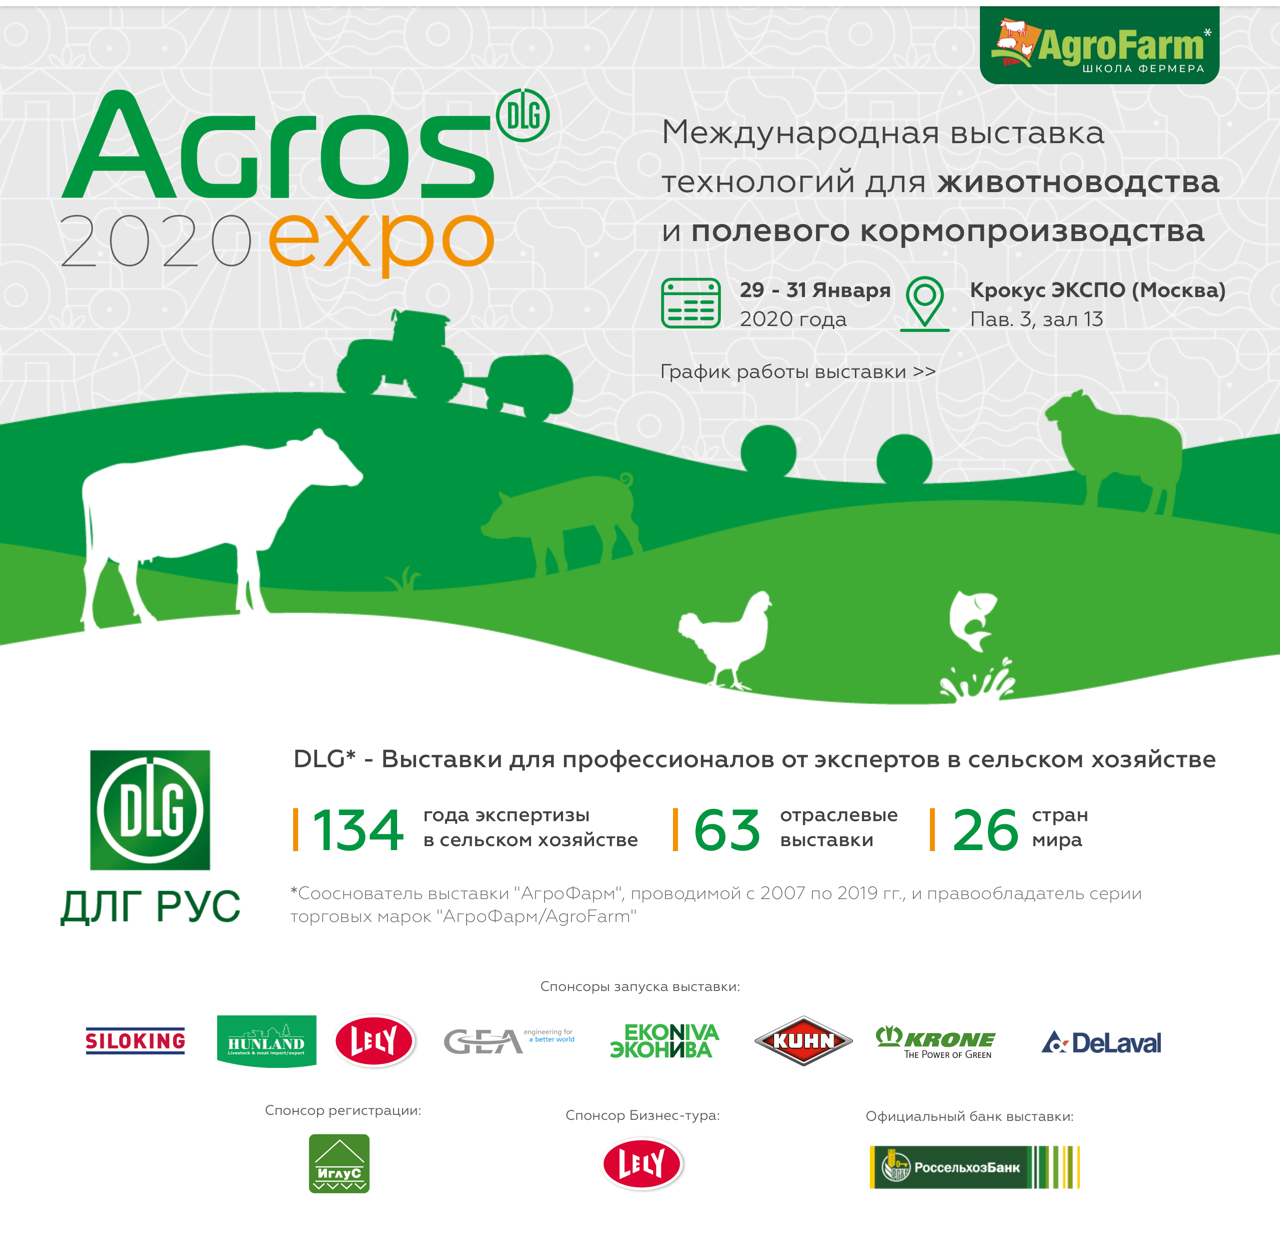 29-31 января 2020 года состоялась международная выставка технологий для животноводства и полевого кормопроизводства АГРОС.